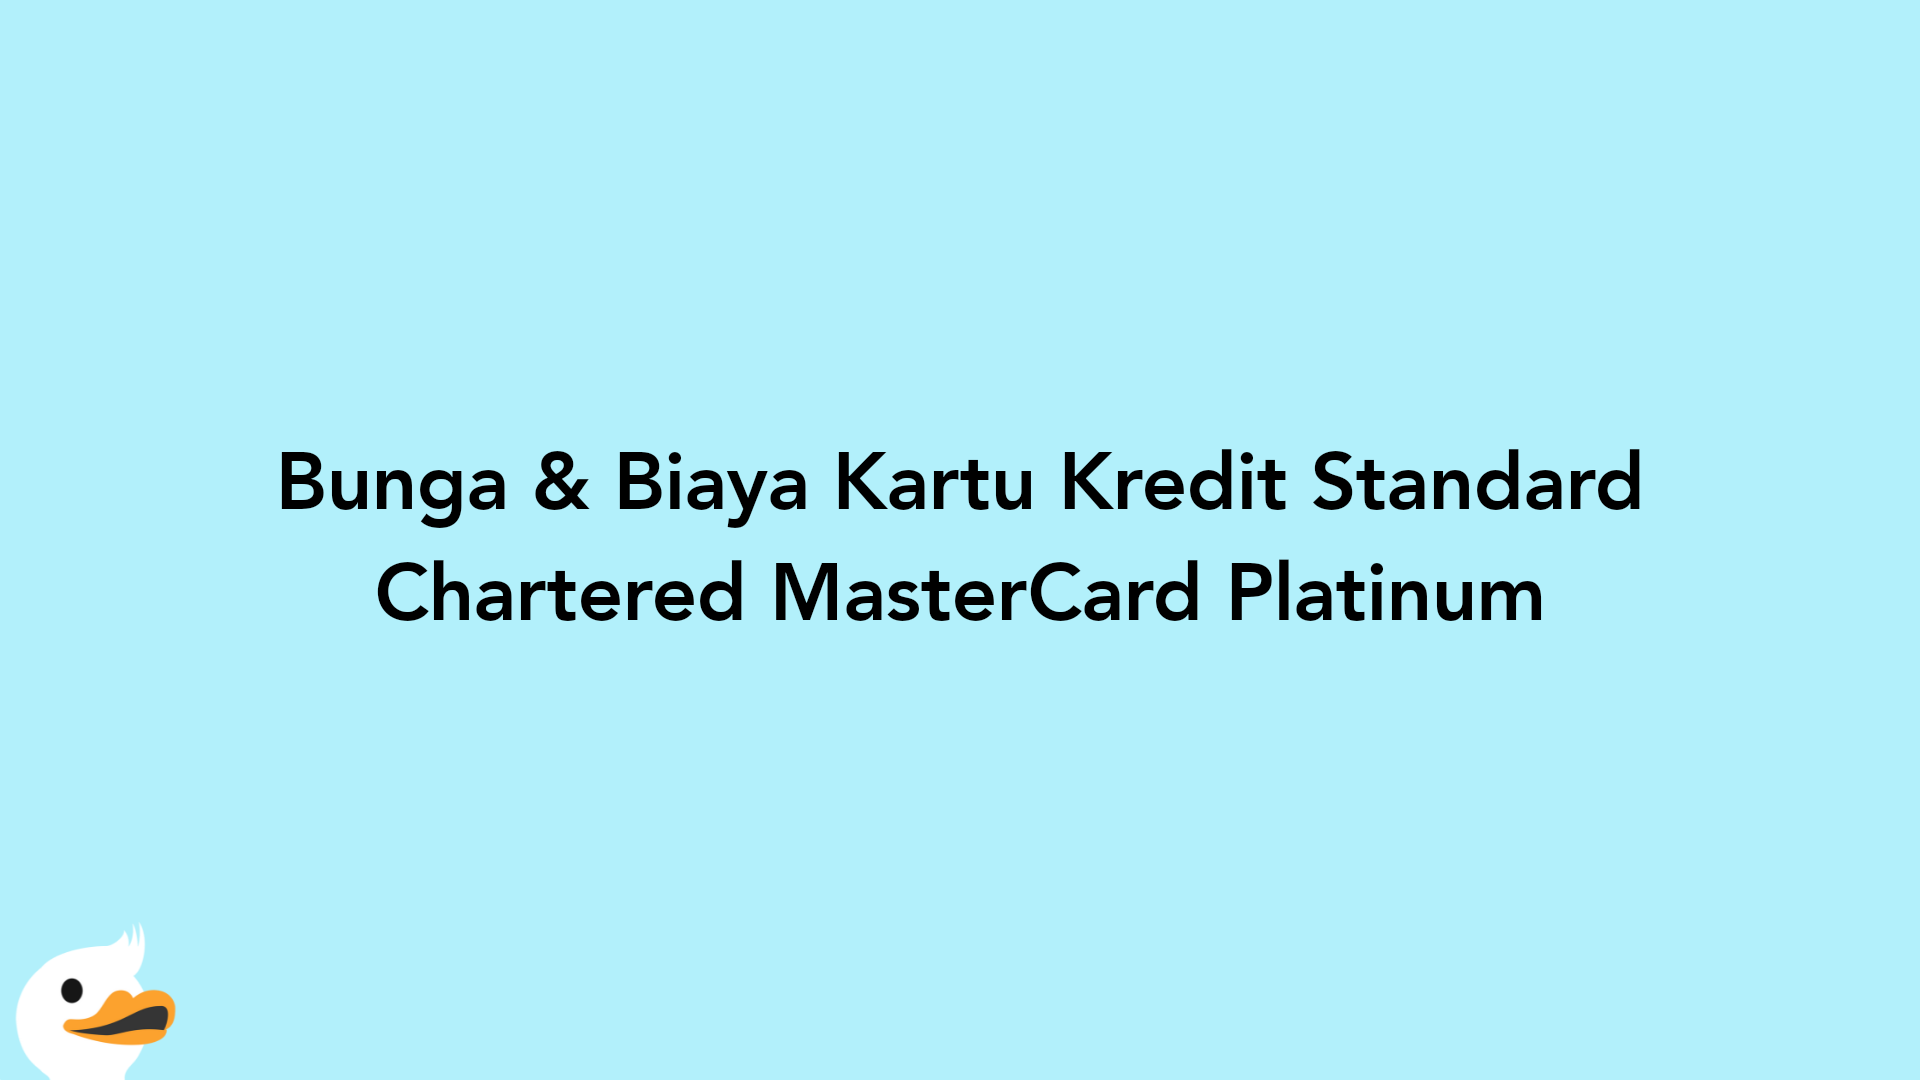 Bunga & Biaya Kartu Kredit Standard Chartered MasterCard Platinum